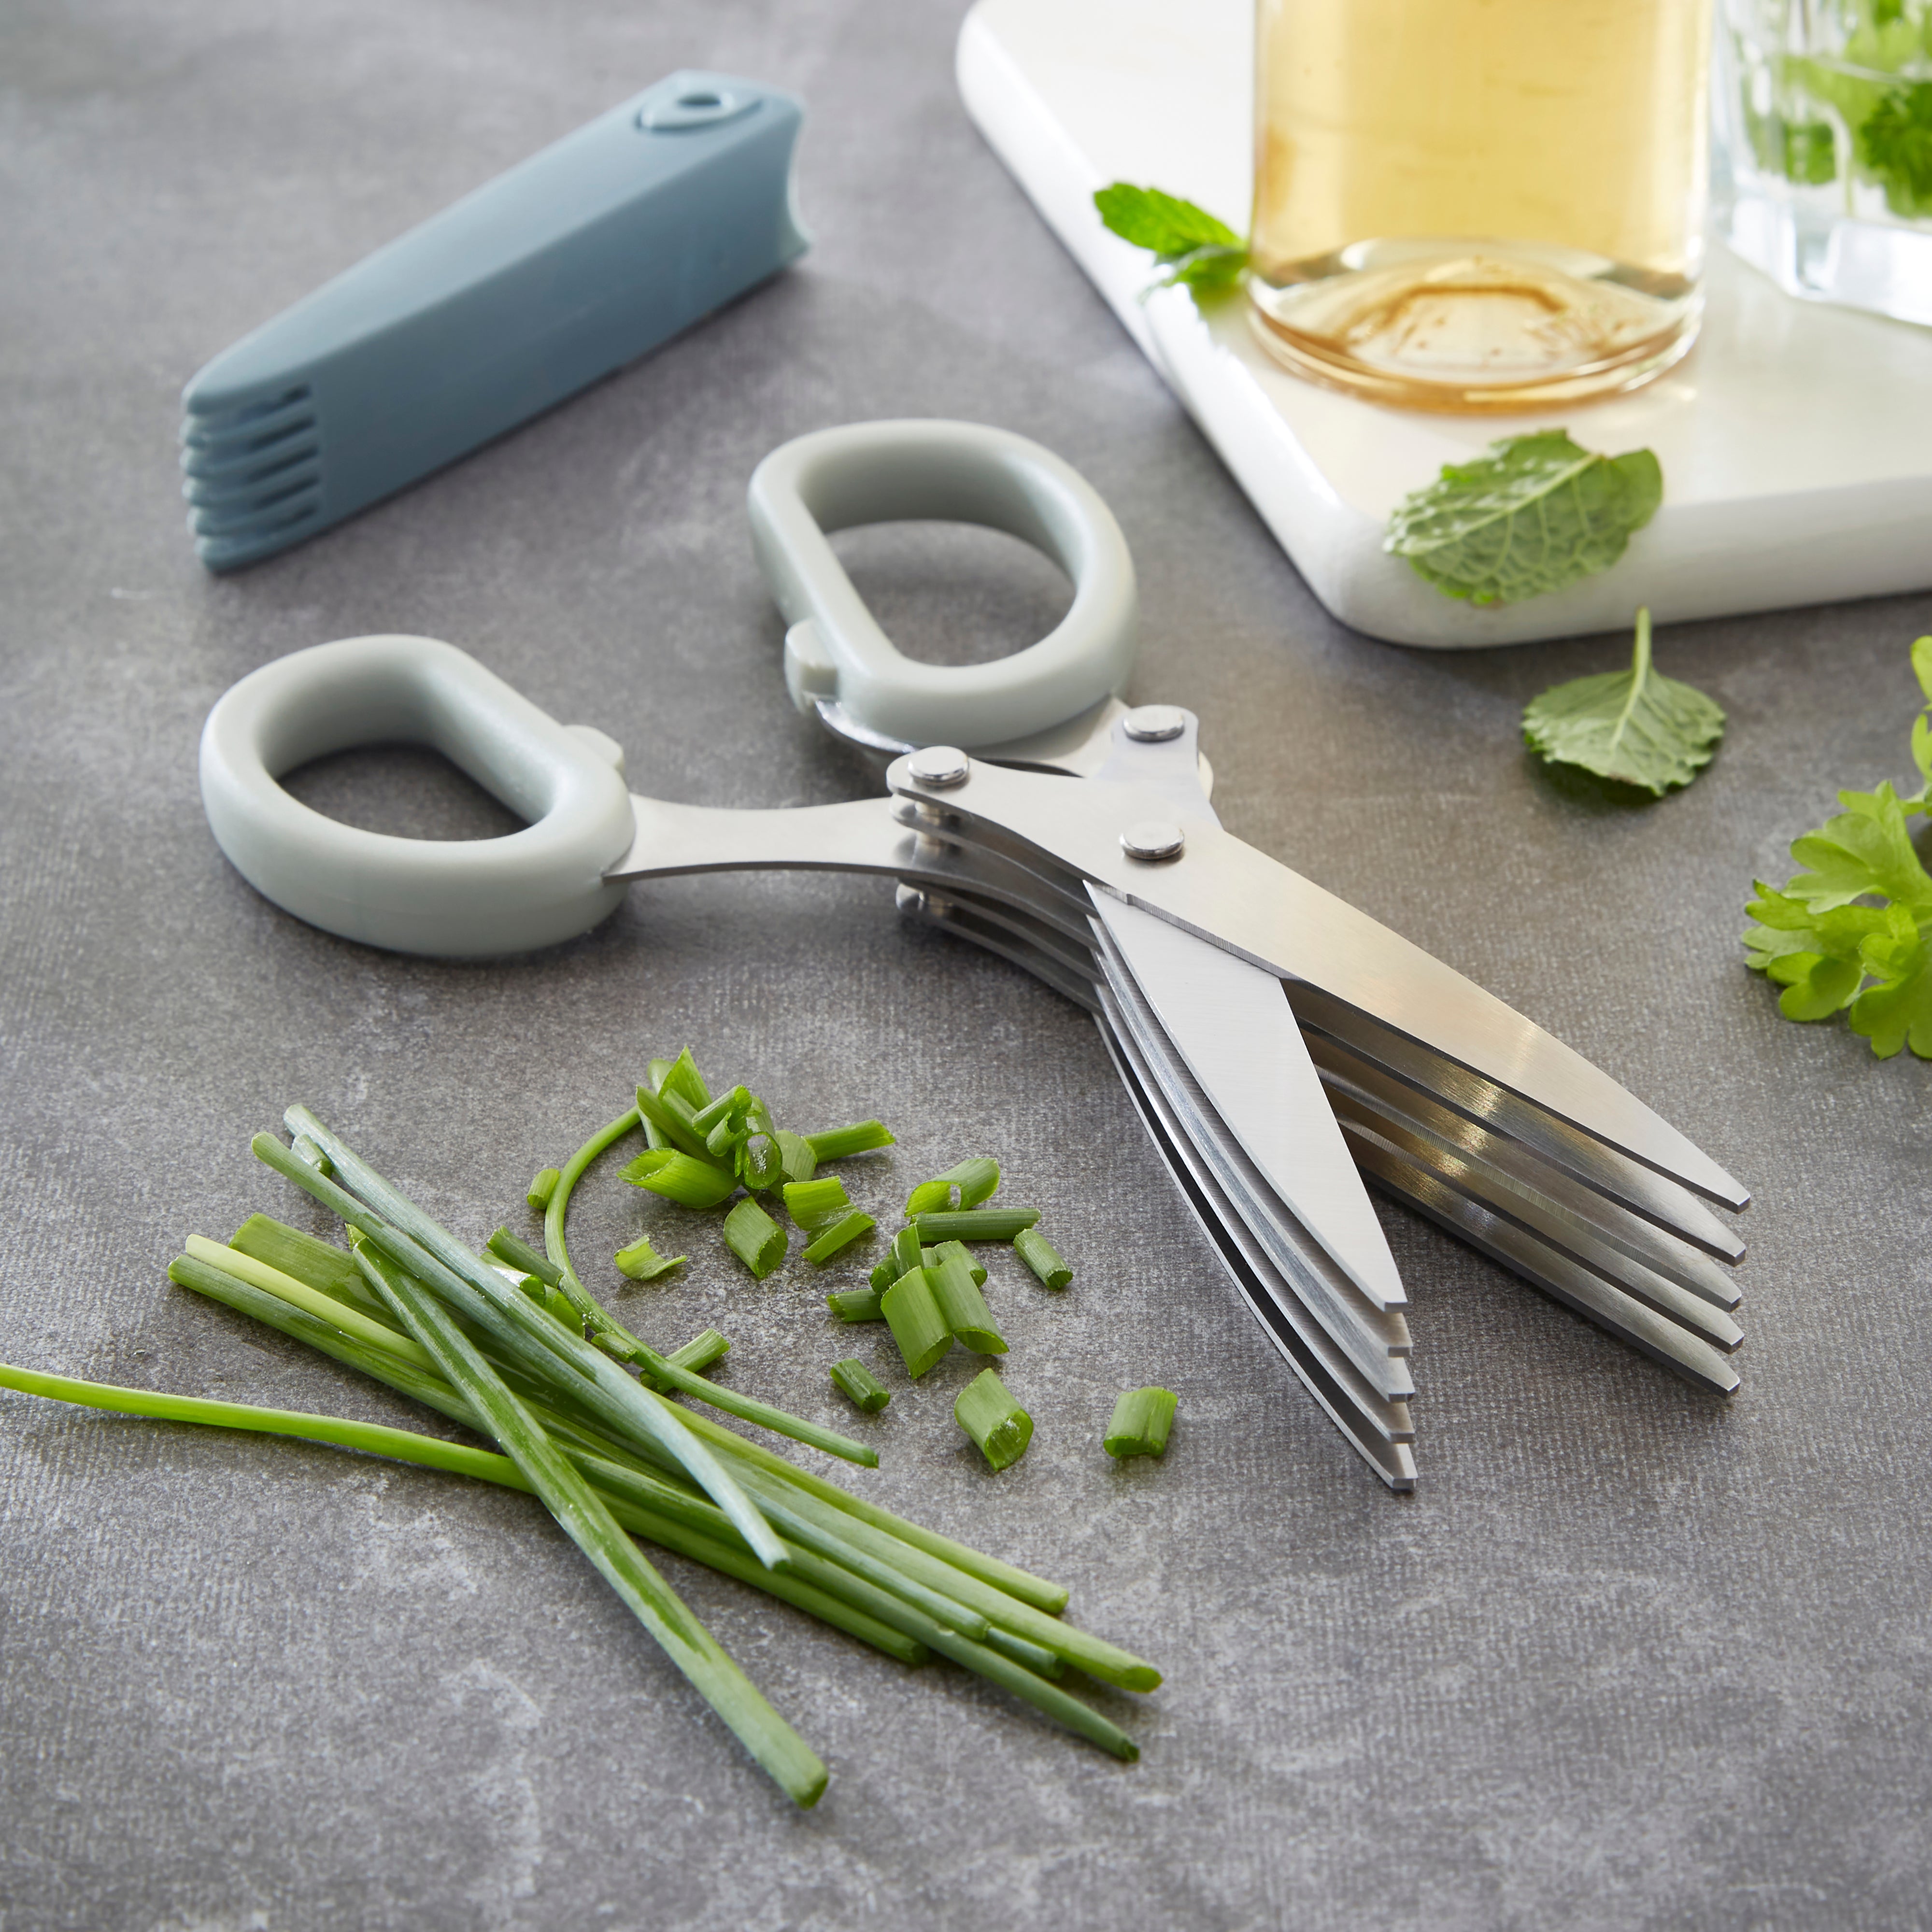 Handy Kitchen Stainless Steel Herb Scissors